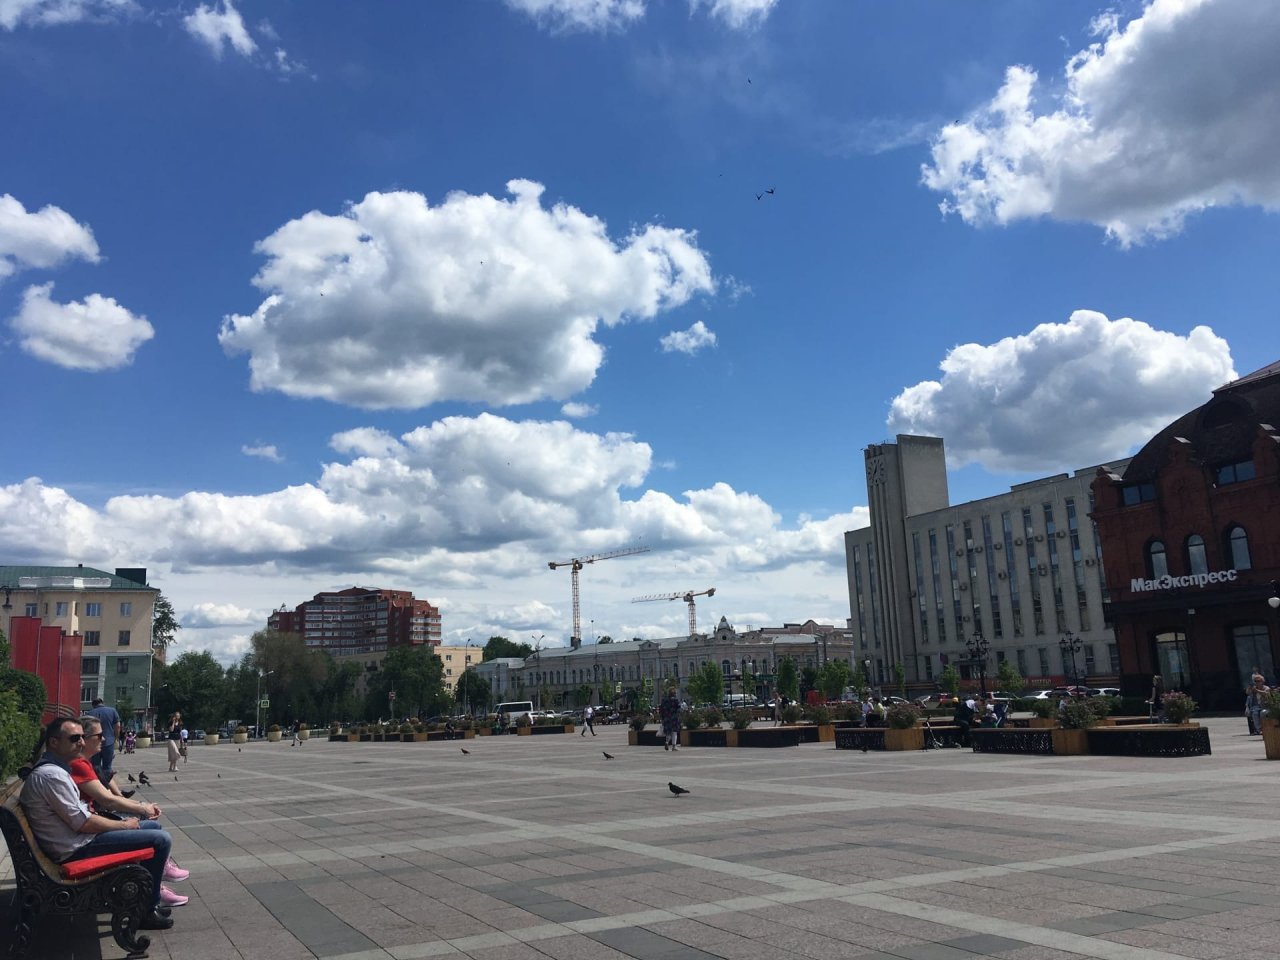 Облик площади Ленина в Пензе скоро снова изменится